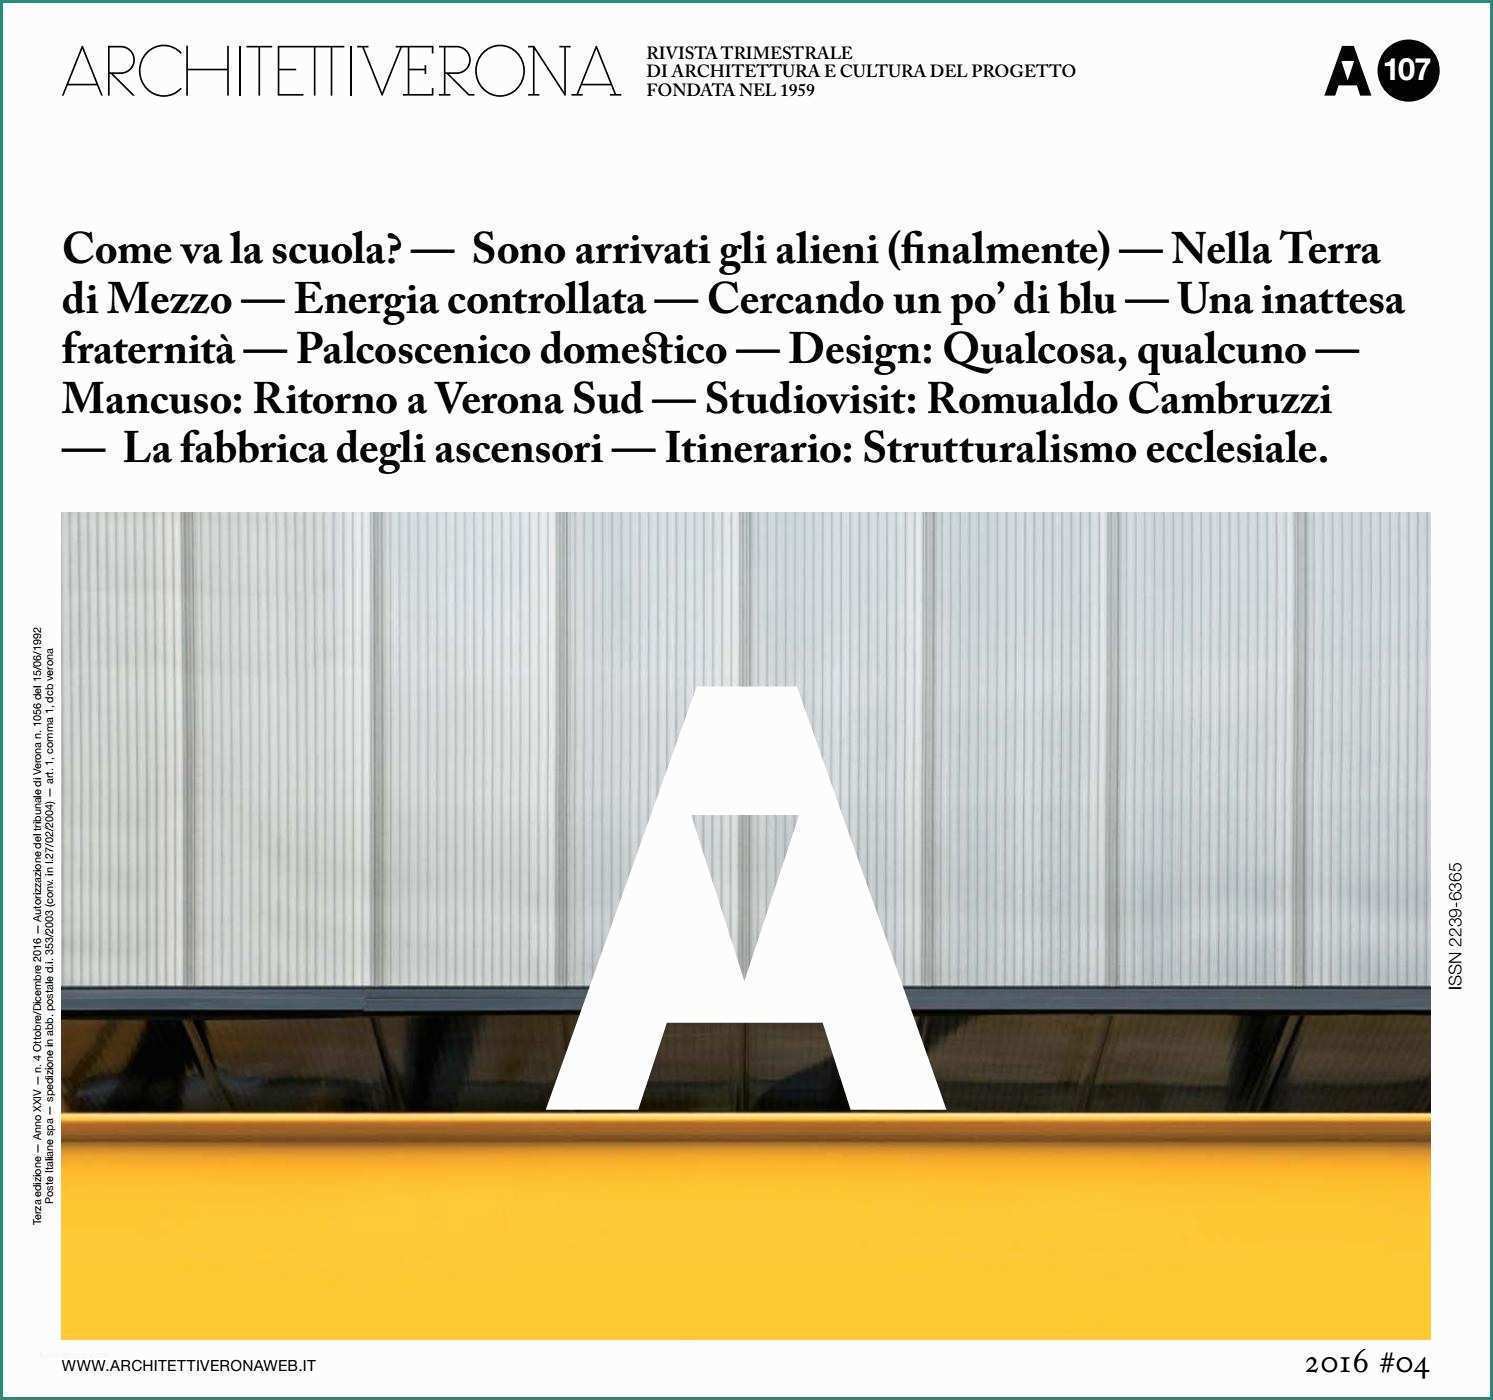 Muri Di sostegno Prefabbricati E Architettiverona 107 by Architettiverona issuu